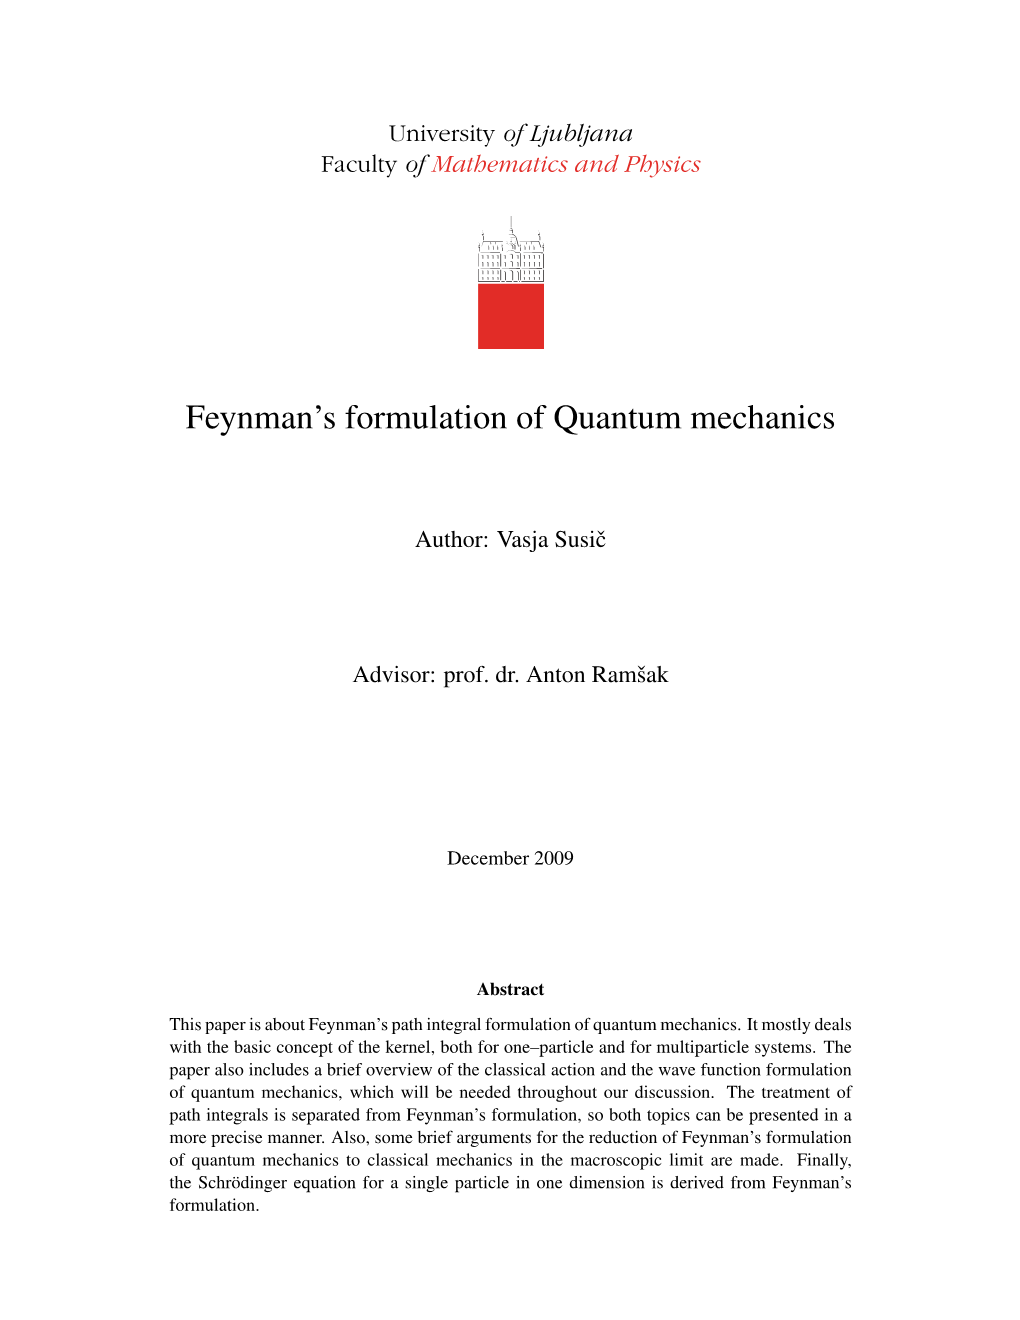 Feynman's Formulation of Quantum Mechanics